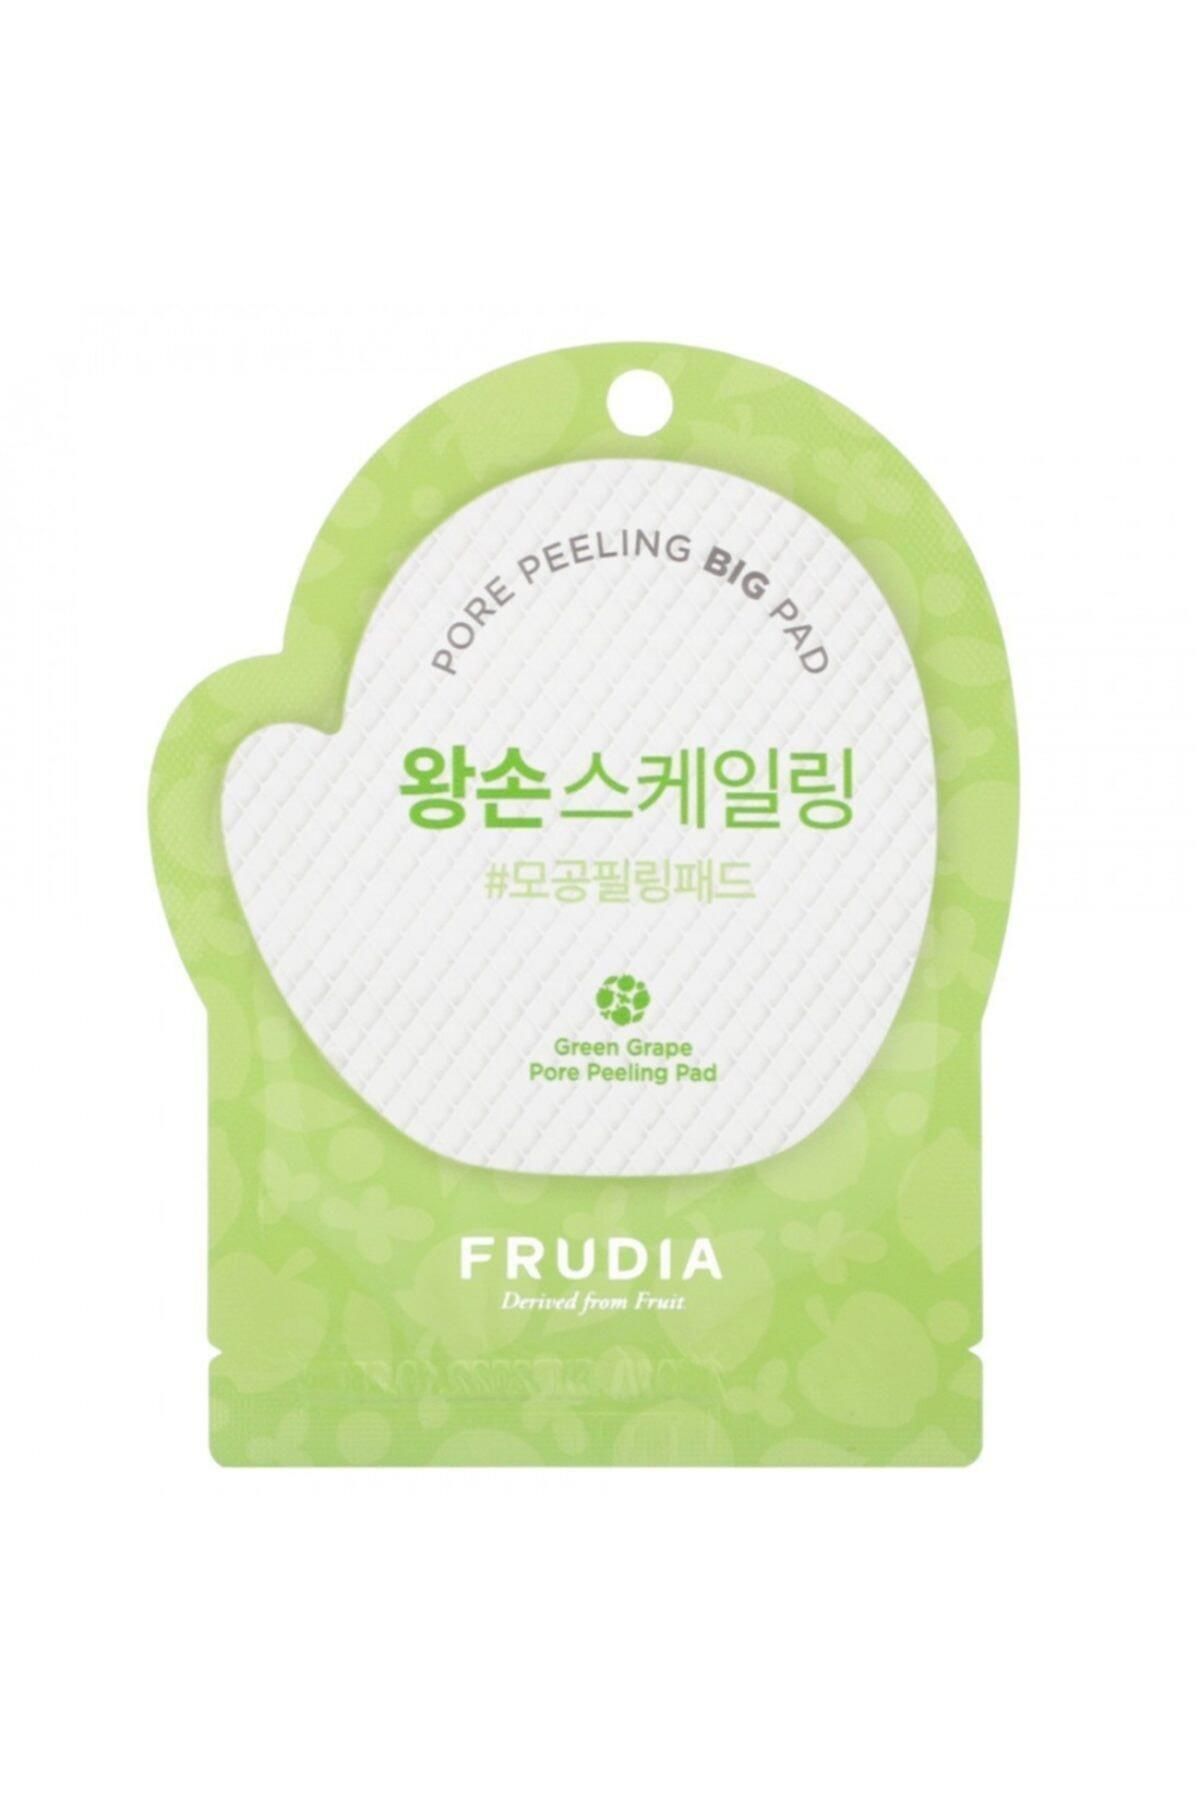 Frudia [] Green Grape Pore Peeling Pad 1